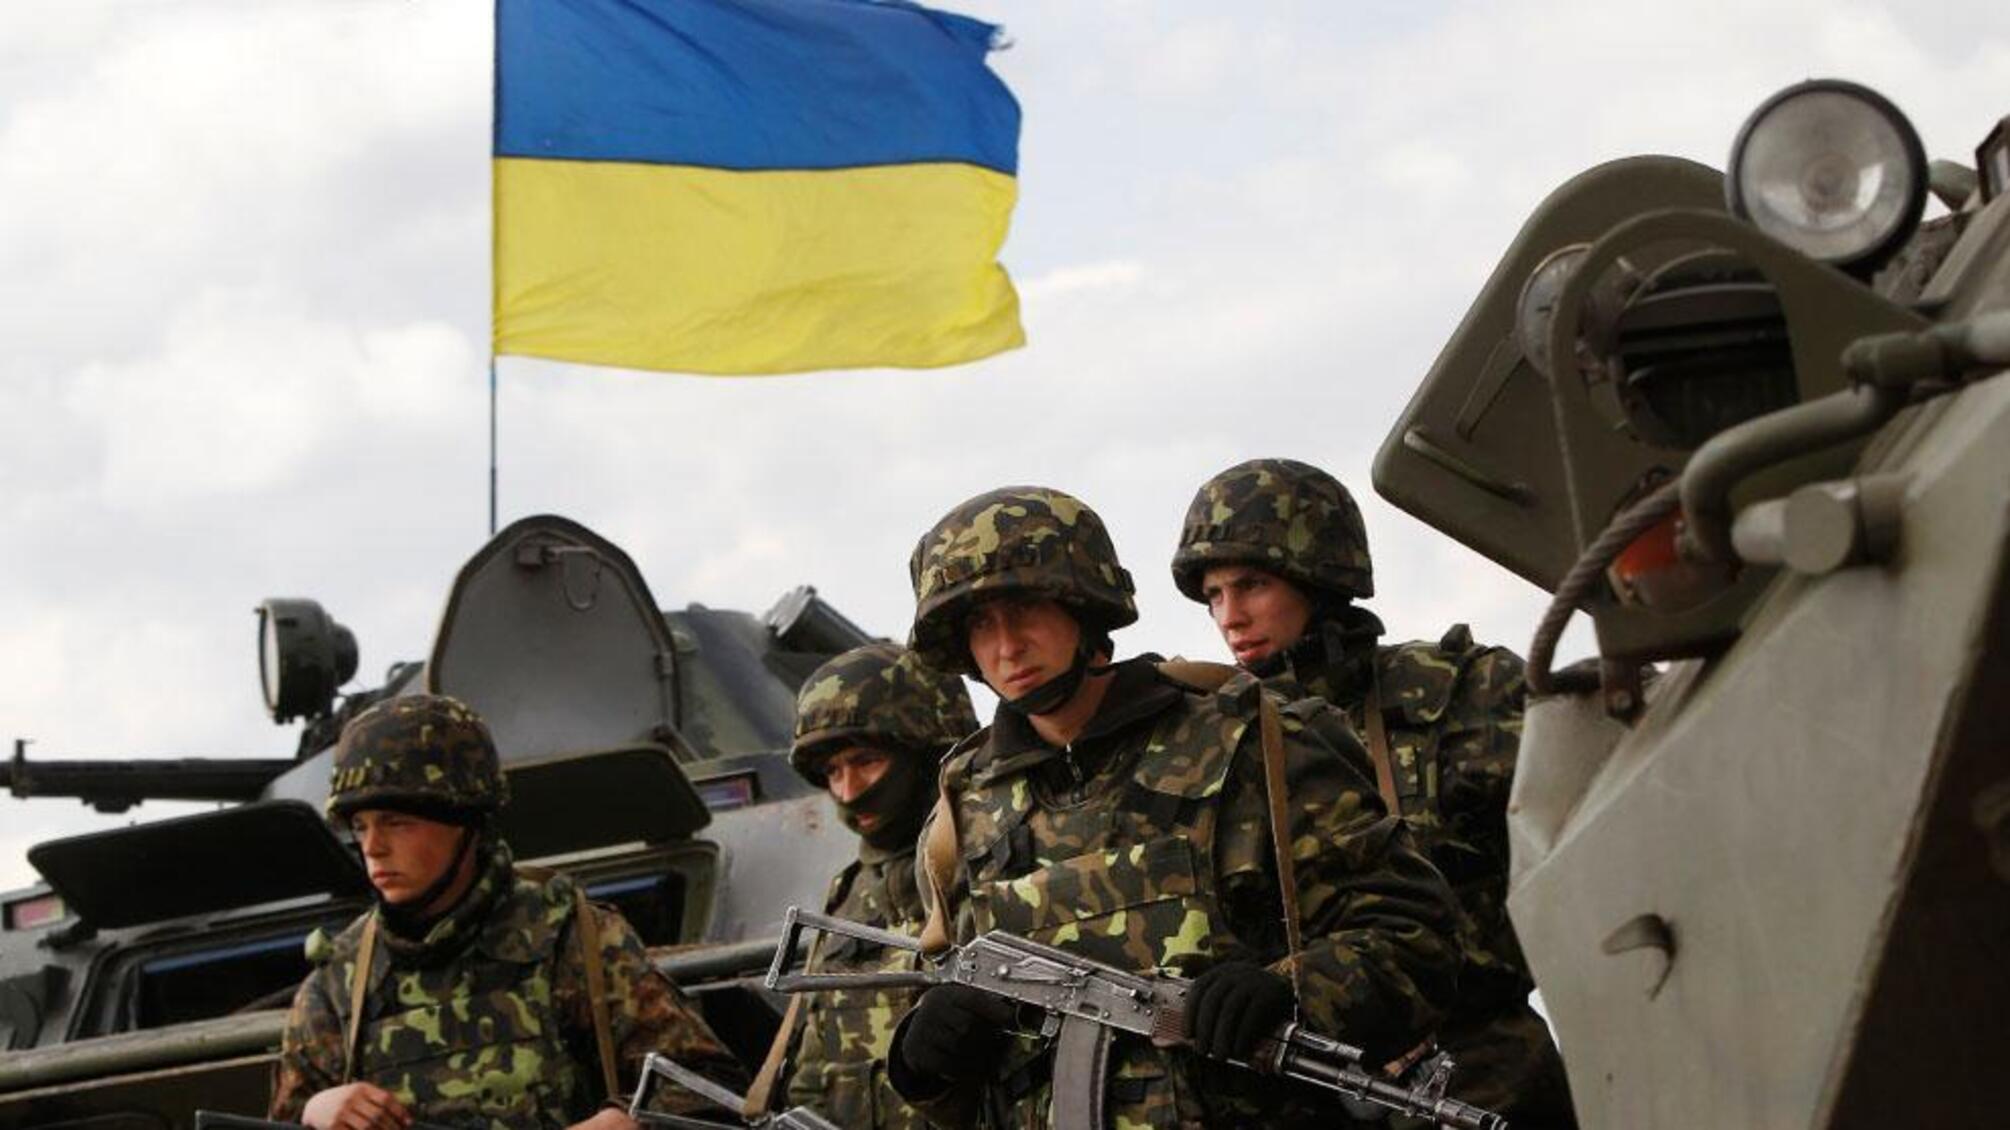 На Донетчине еще над одним населенным пунктом поднят флаг Украины (видео)